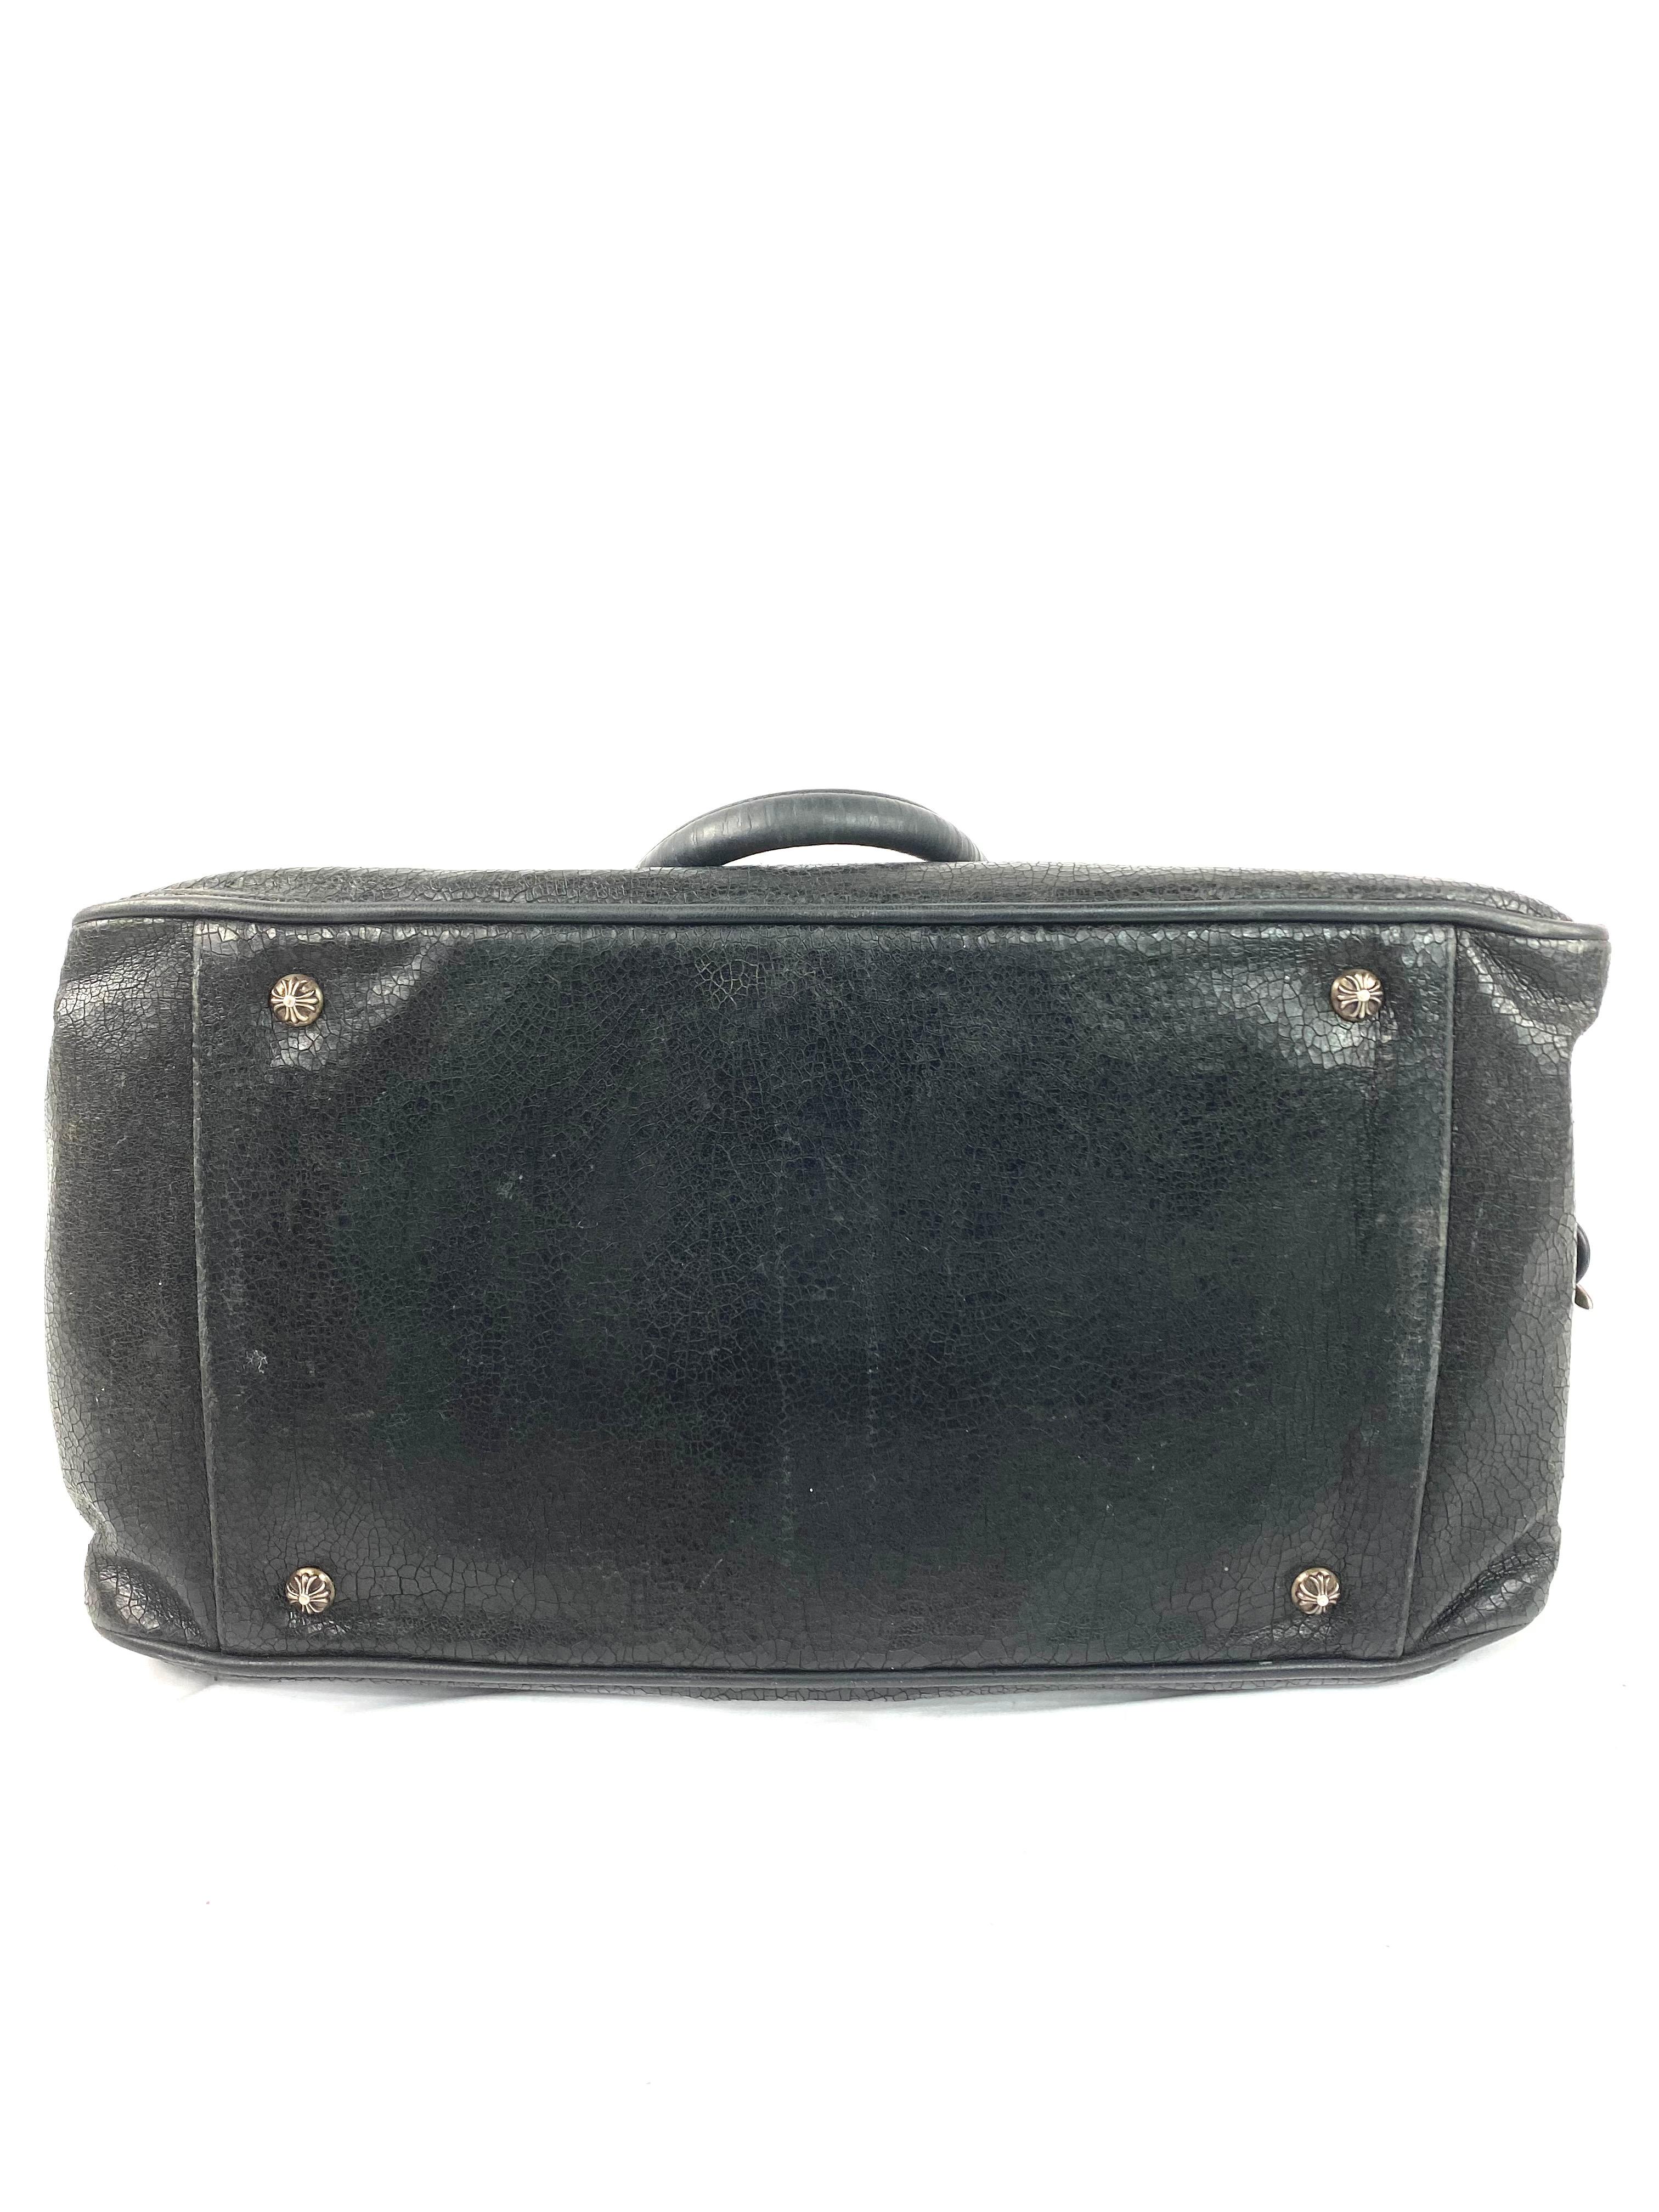 Vintage Chrome Hearts Black Leather Tote Shoulder Handbag 3